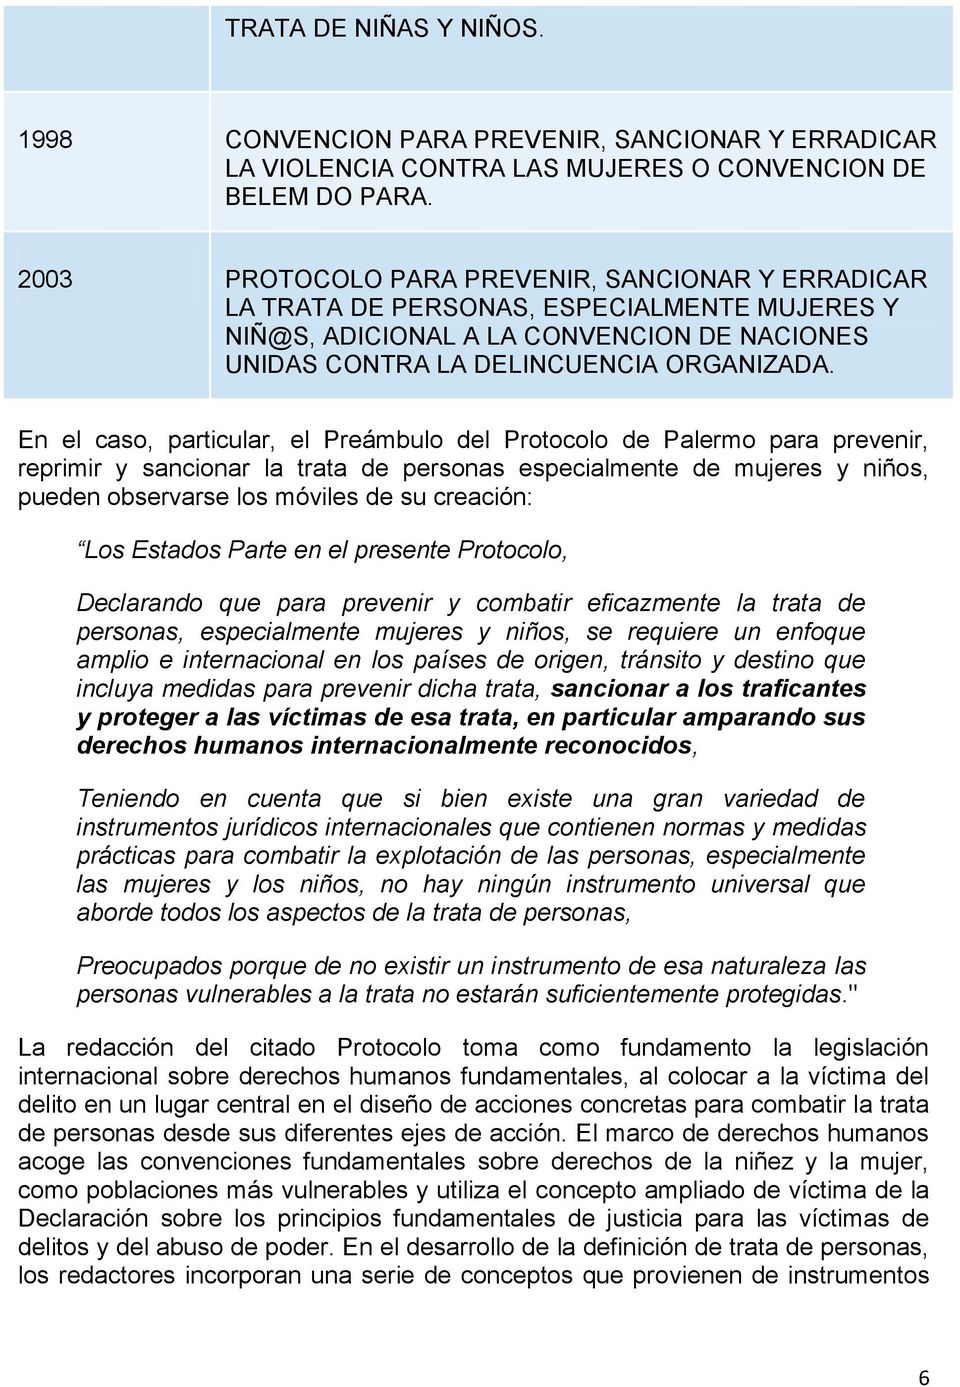 En el caso, particular, el Preámbulo del Protocolo de Palermo para prevenir, reprimir y sancionar la trata de personas especialmente de mujeres y niños, pueden observarse los móviles de su creación: